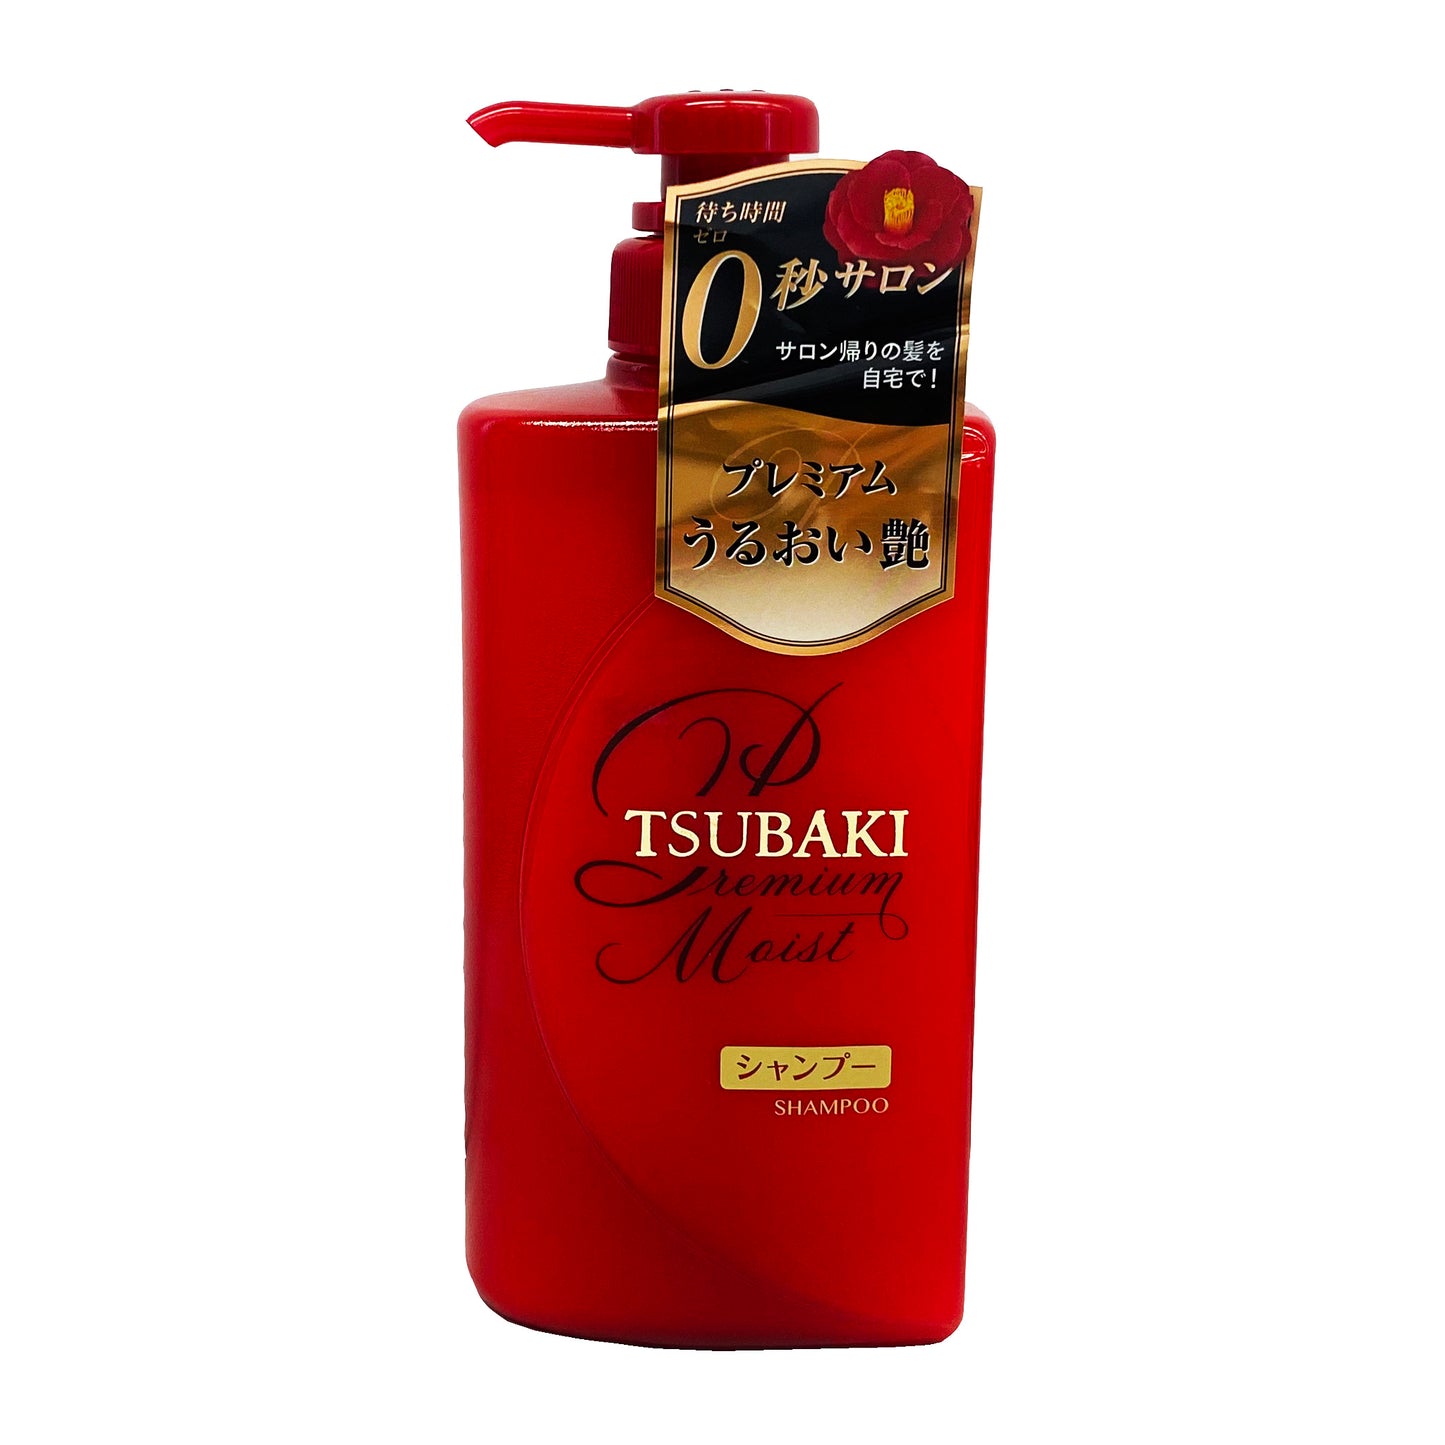 Front graphic view of Shiseido Tsubaki Premium Moist - Shampoo 16.6oz (490ml)